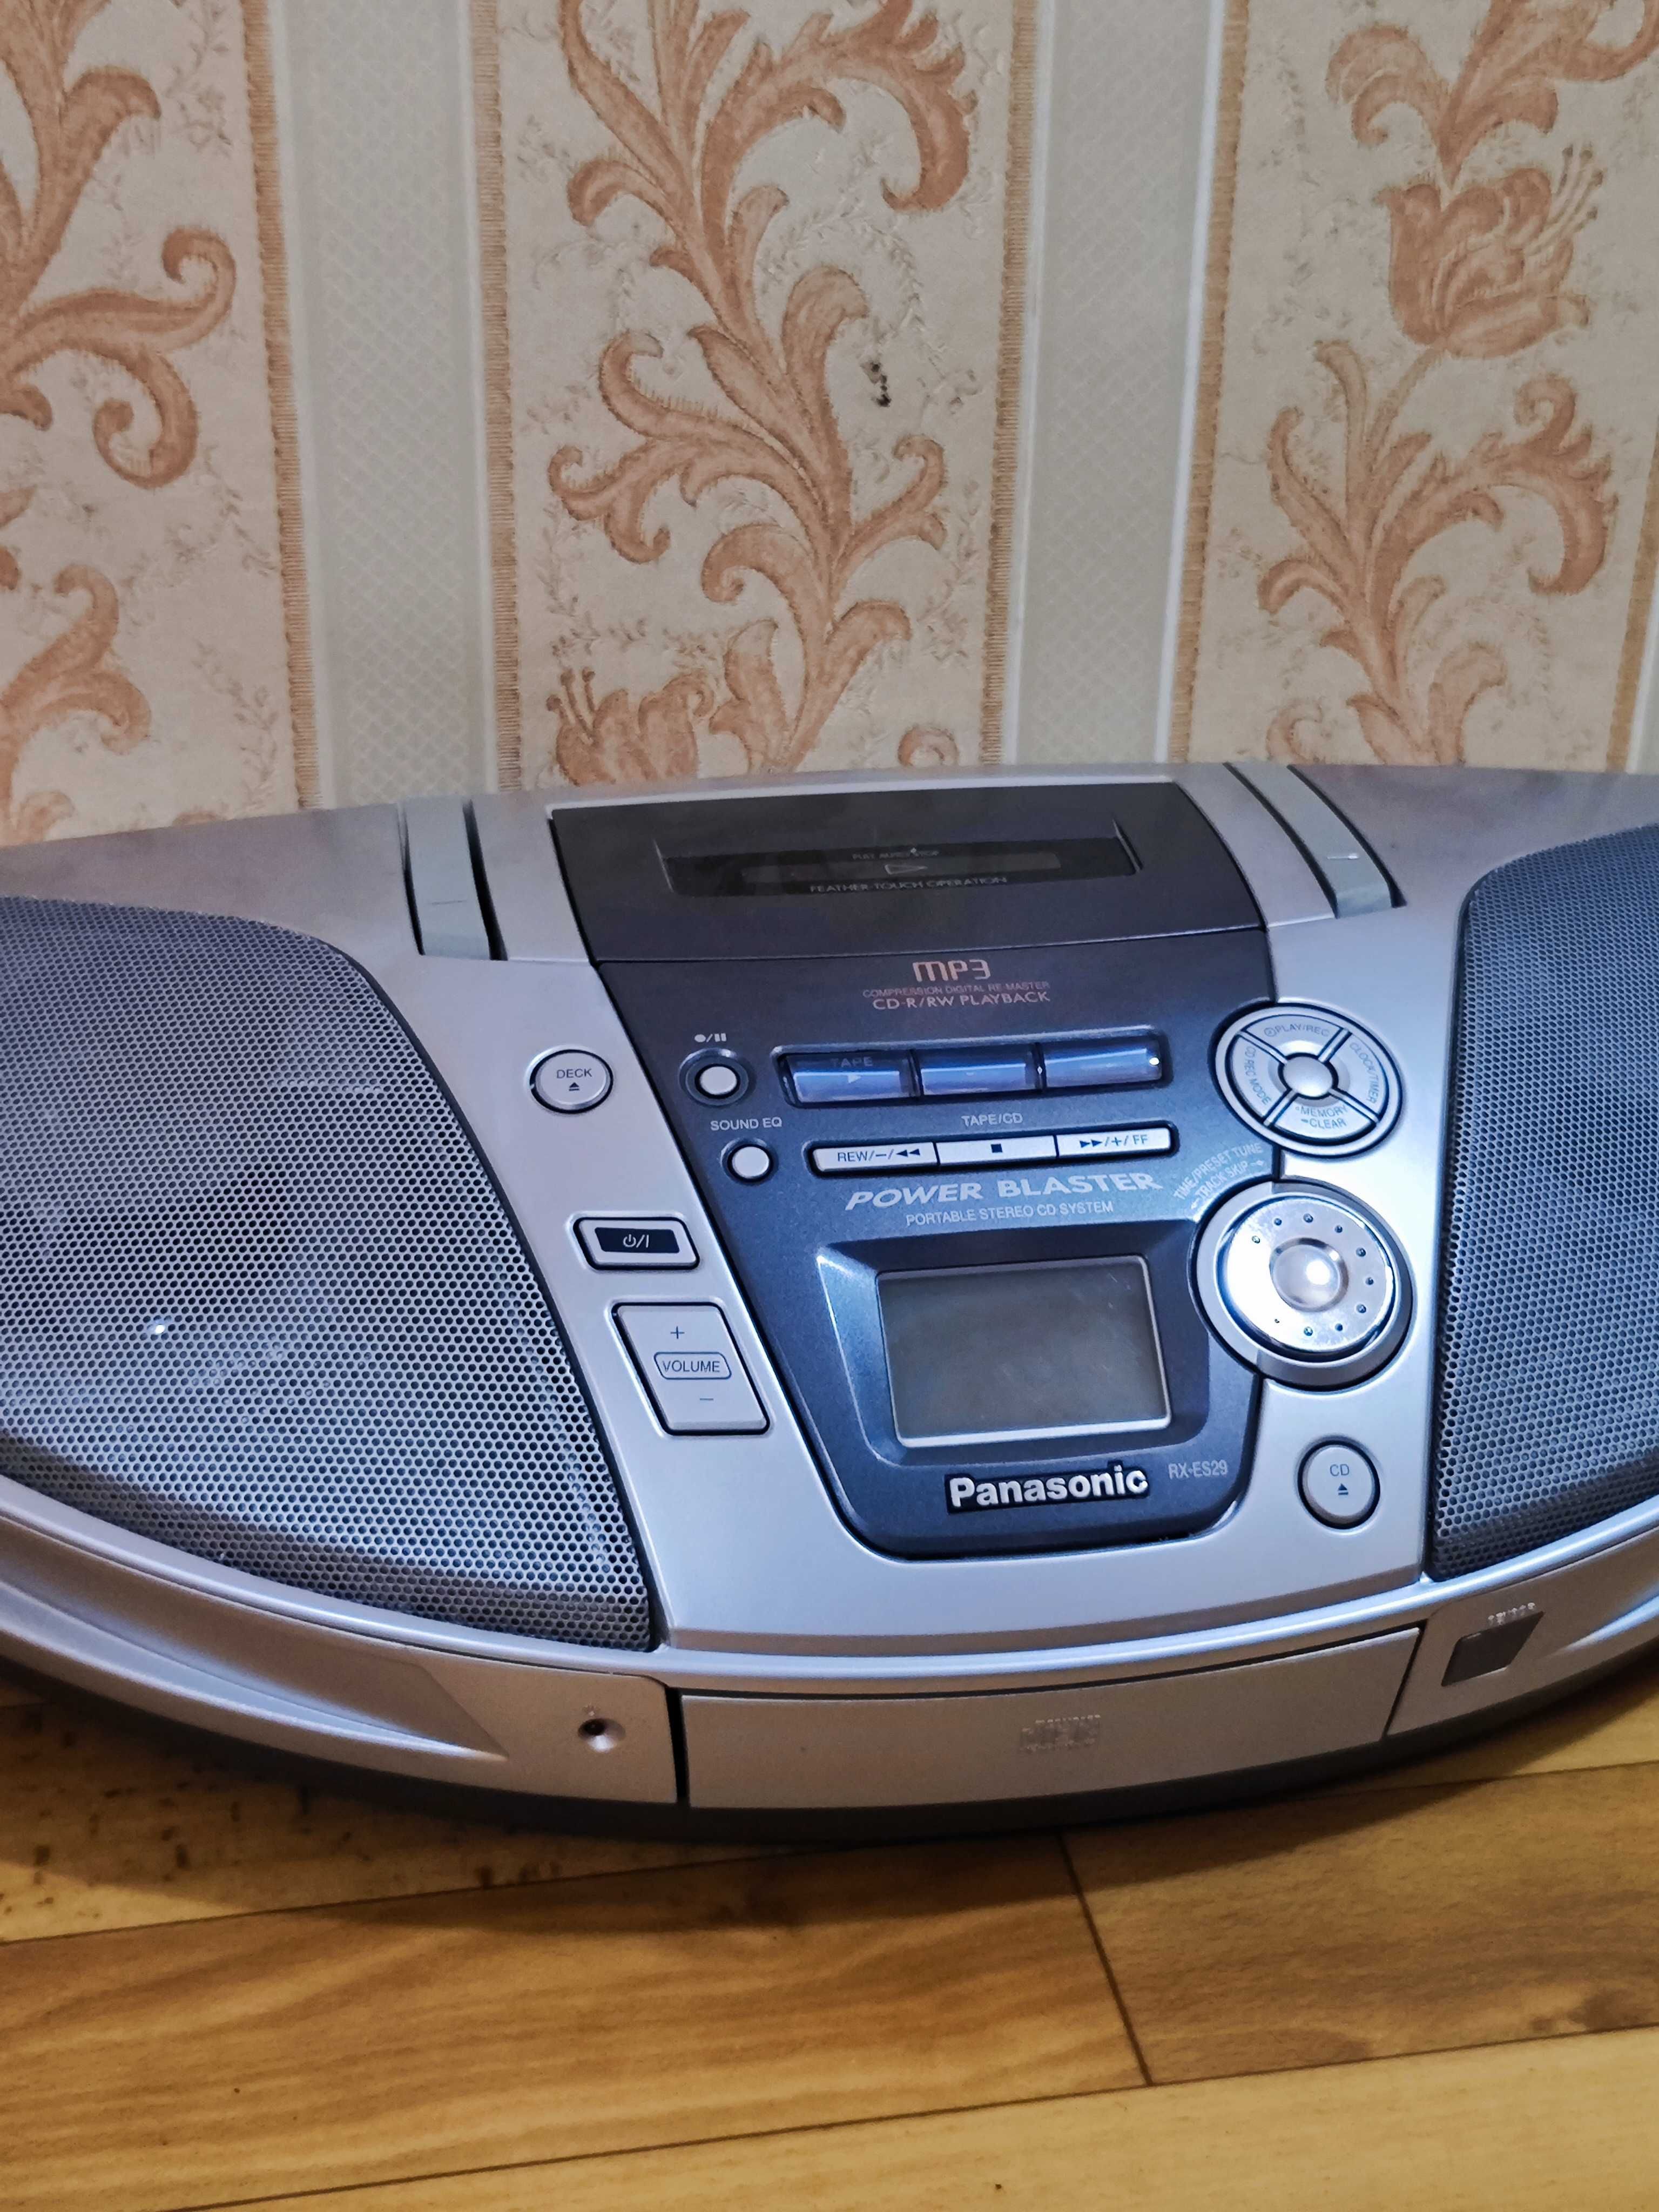 Стерео магнитола с CD Panasonic RX-ES29